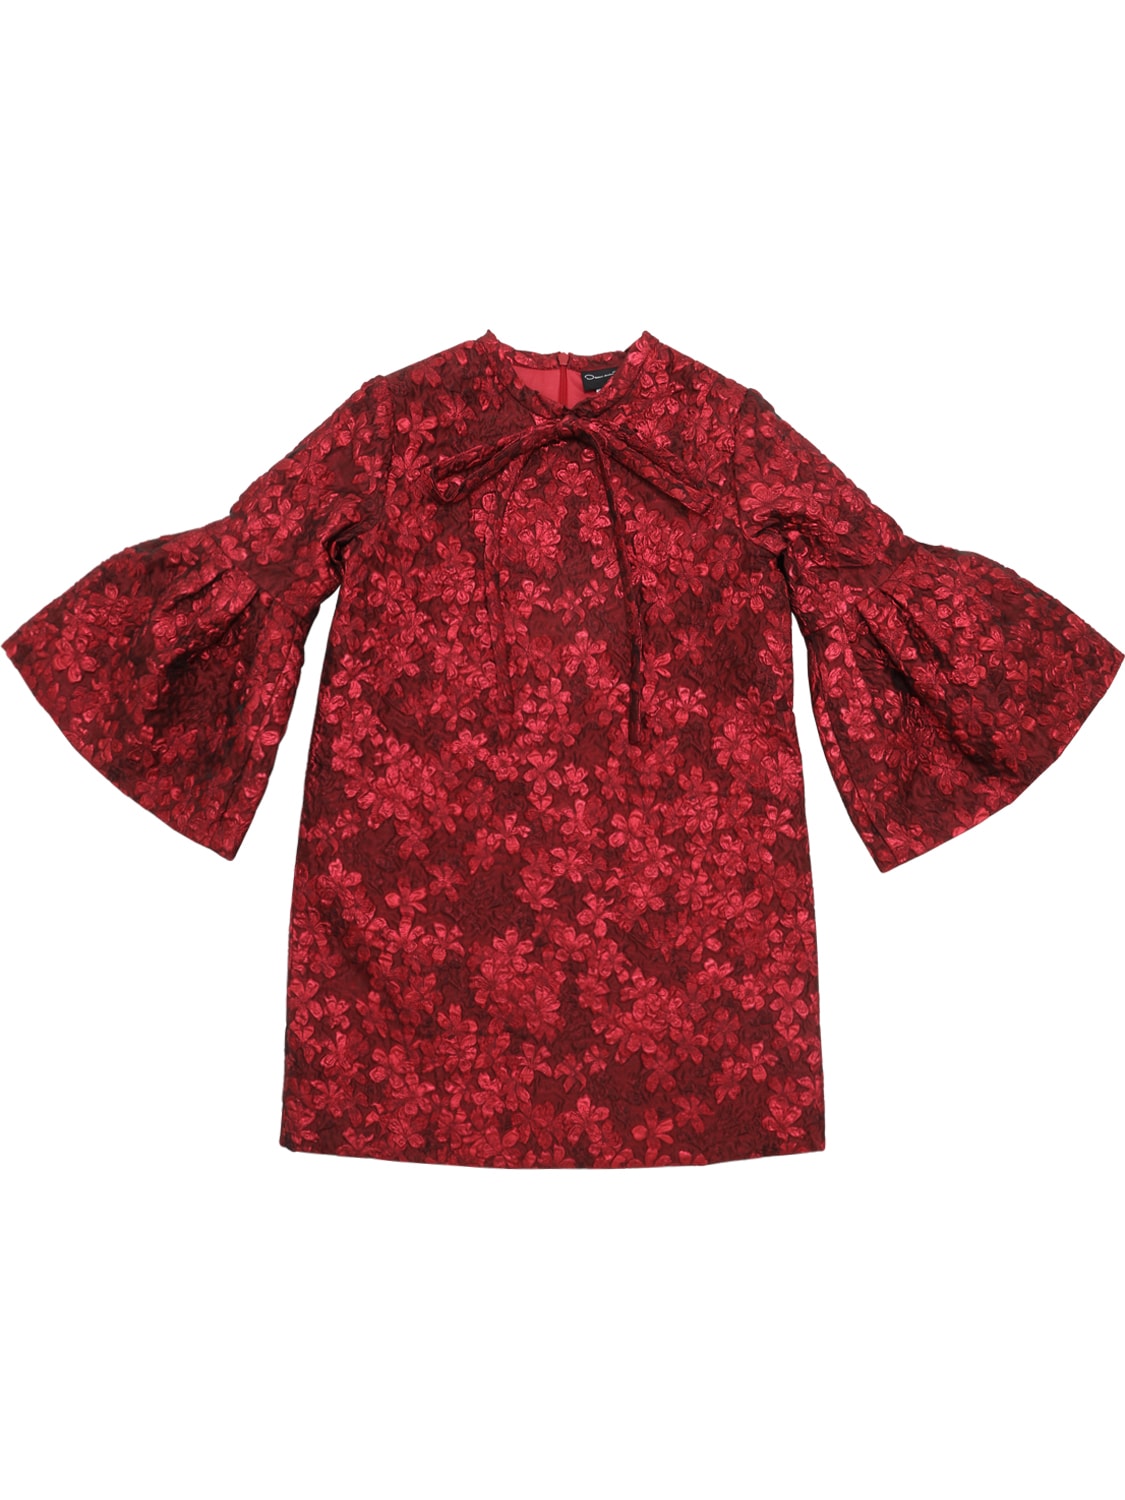 OSCAR DE LA RENTA FLORAL JACQUARD DRESS,70I1WK013-UKVE0